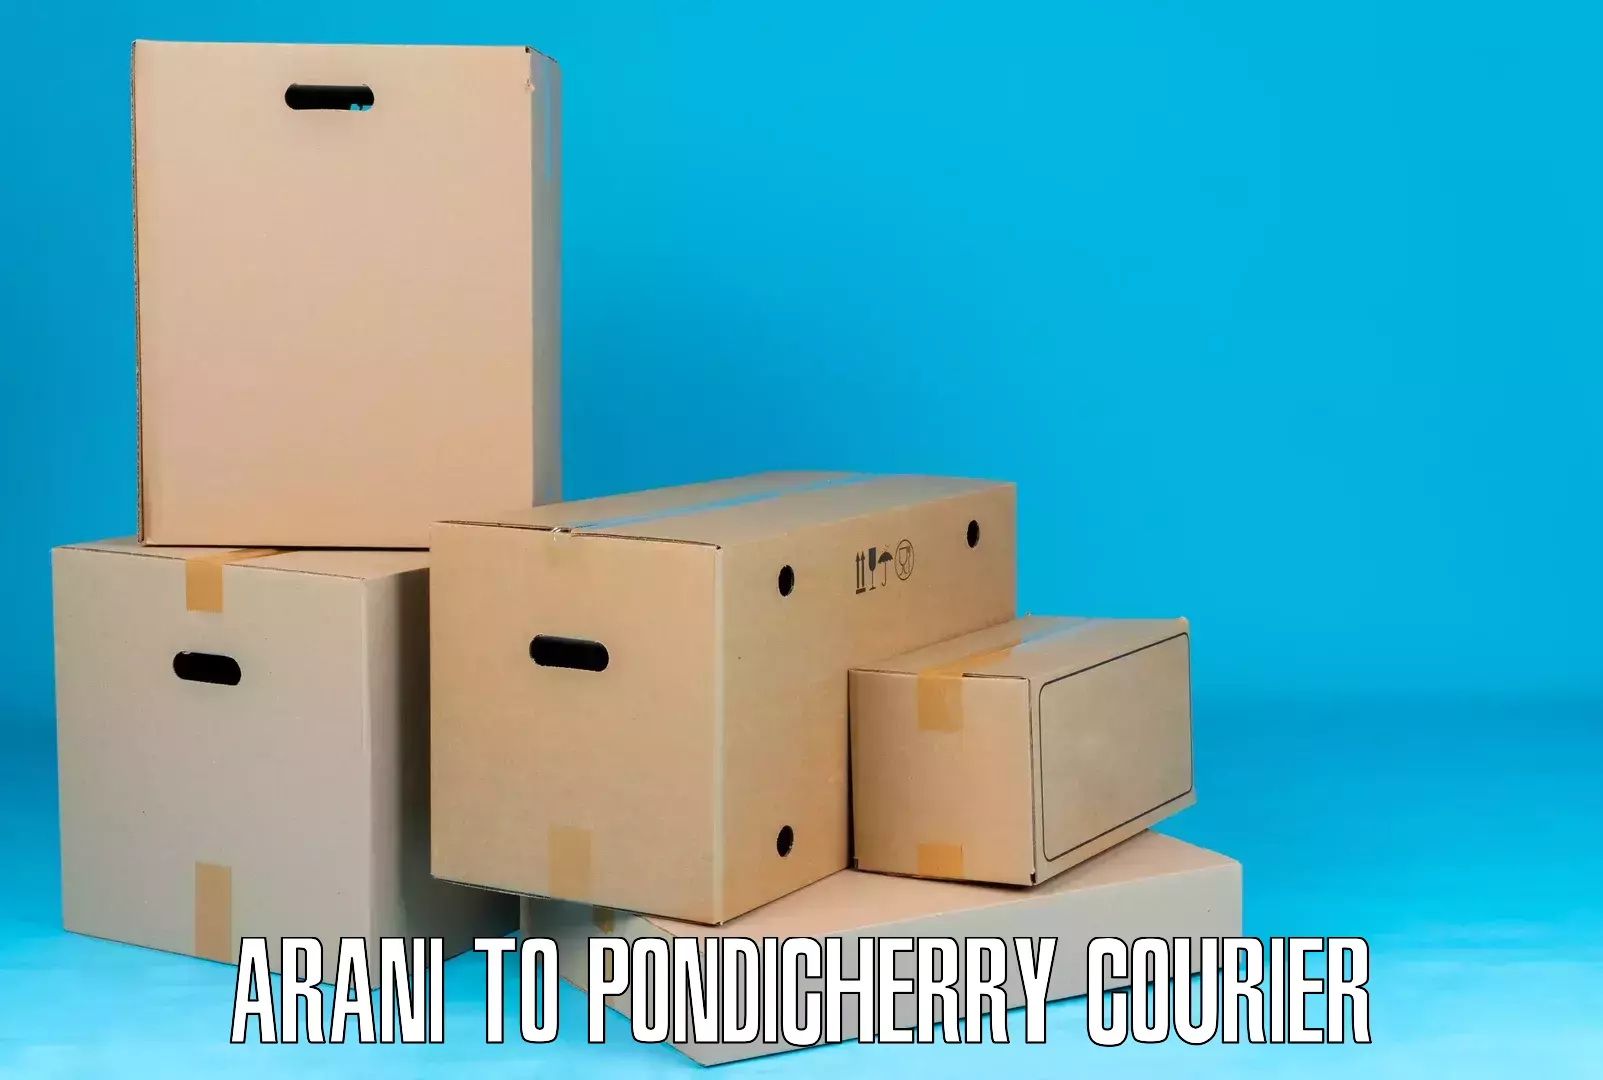 Ocean freight courier Arani to Pondicherry